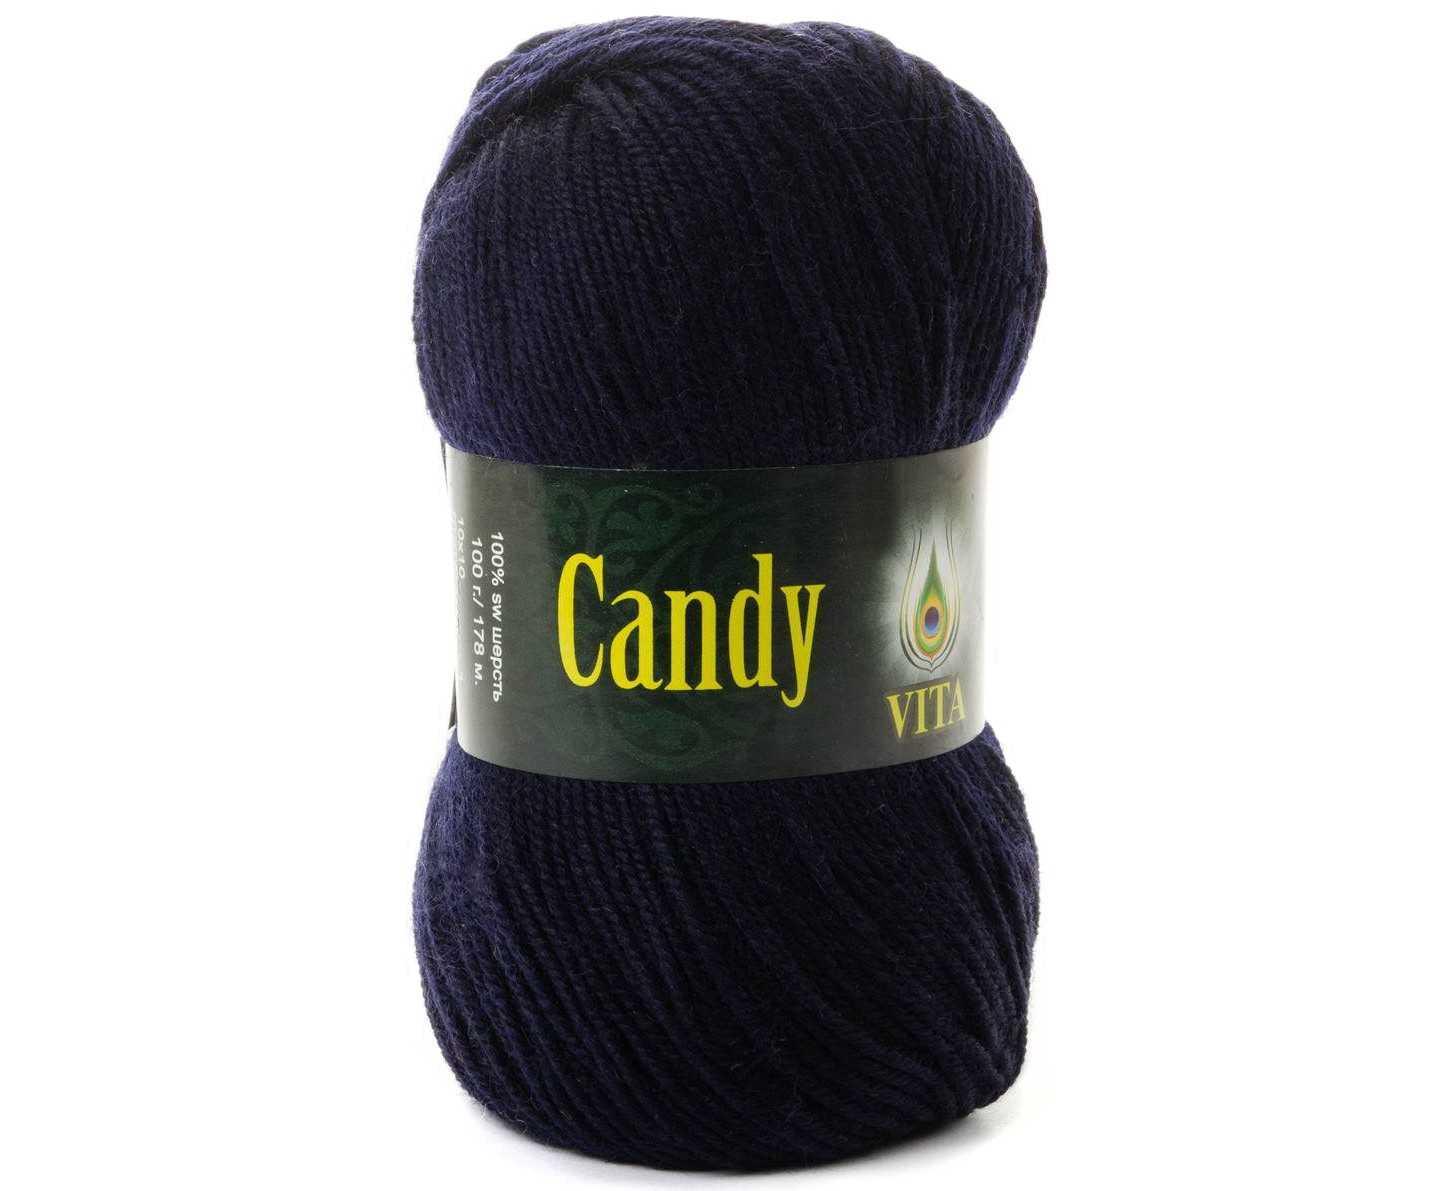 Vita Candy цвет № 2502 темно-синий